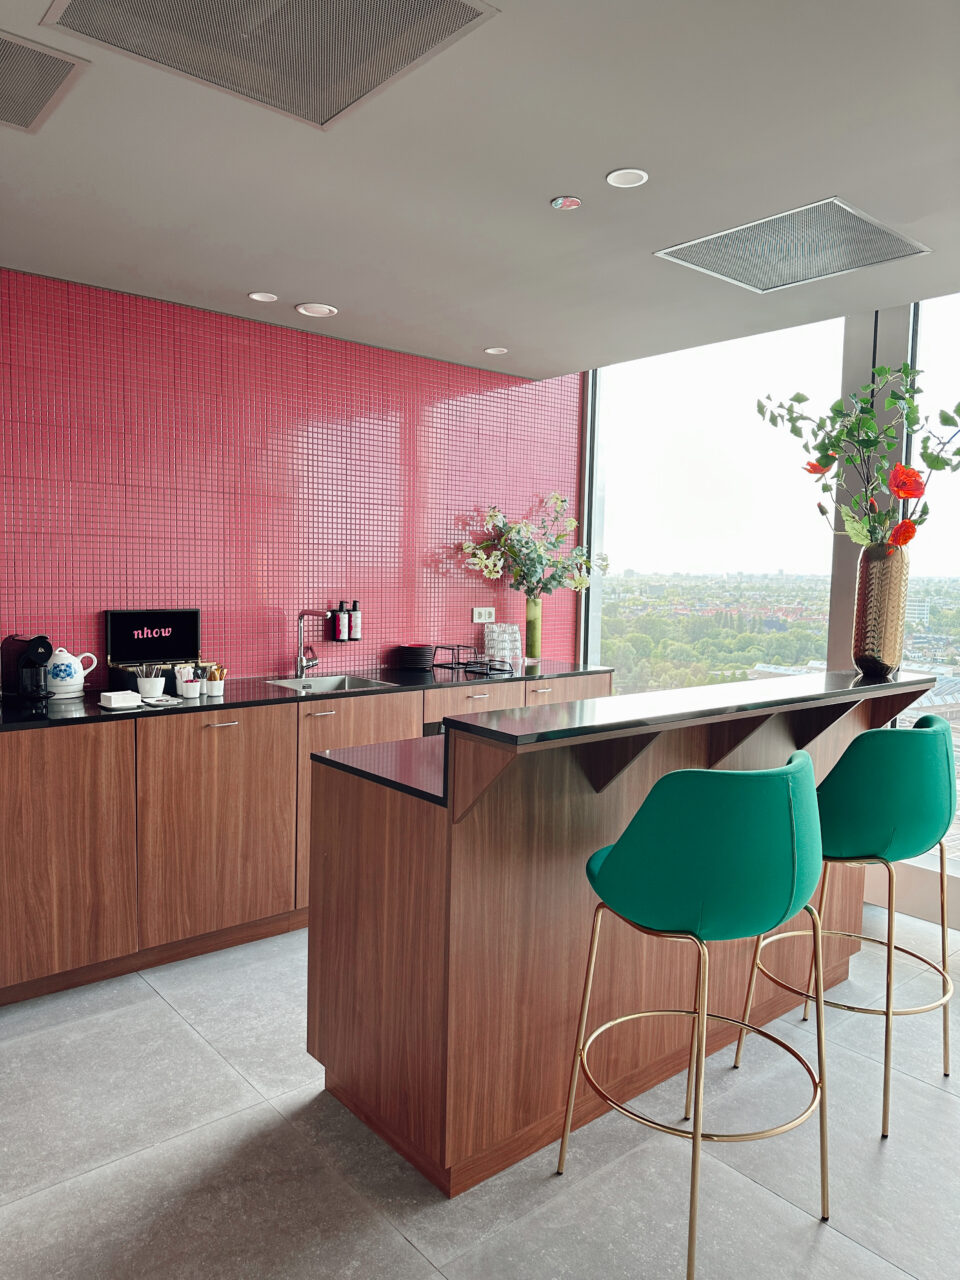 Et kjøkken med rosa fliser, grønne stoler og detaljer i tre. Foto